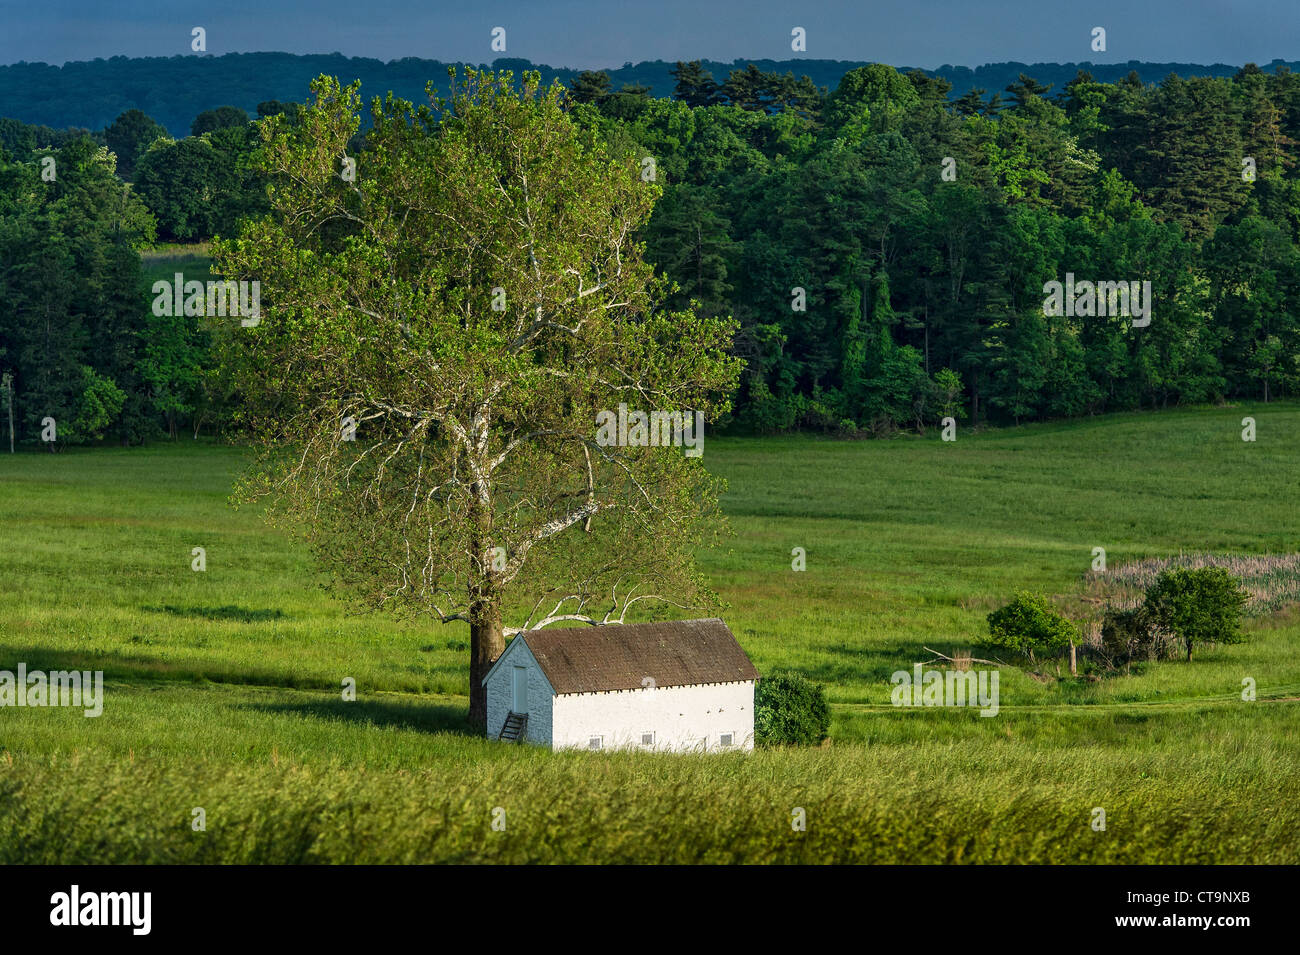 Spring House rural dans un écrin de paysage pastoral, comté de Chester, Pennsylvania, USA Banque D'Images